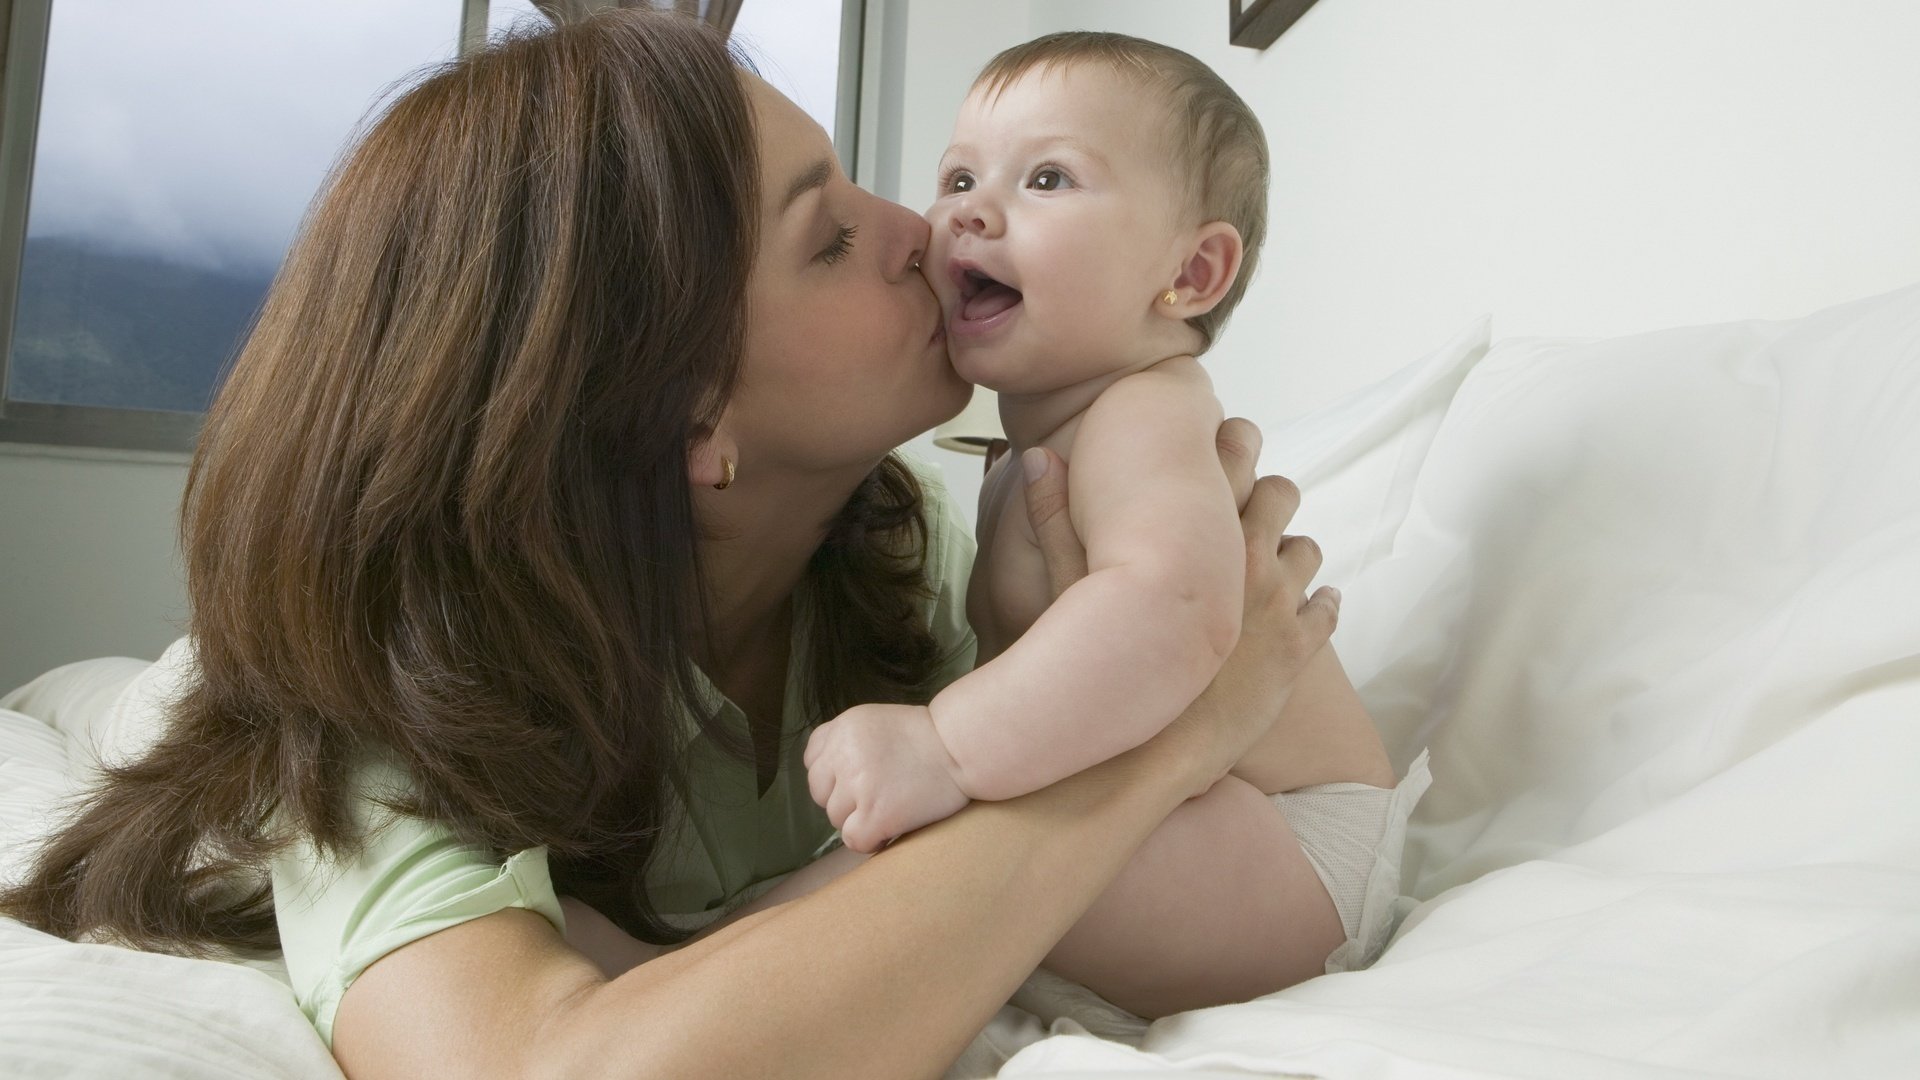 Лижет родной маме. Малыш и мама. Женщина с ребенком. Мама целует малыша. Мама картинка для детей.